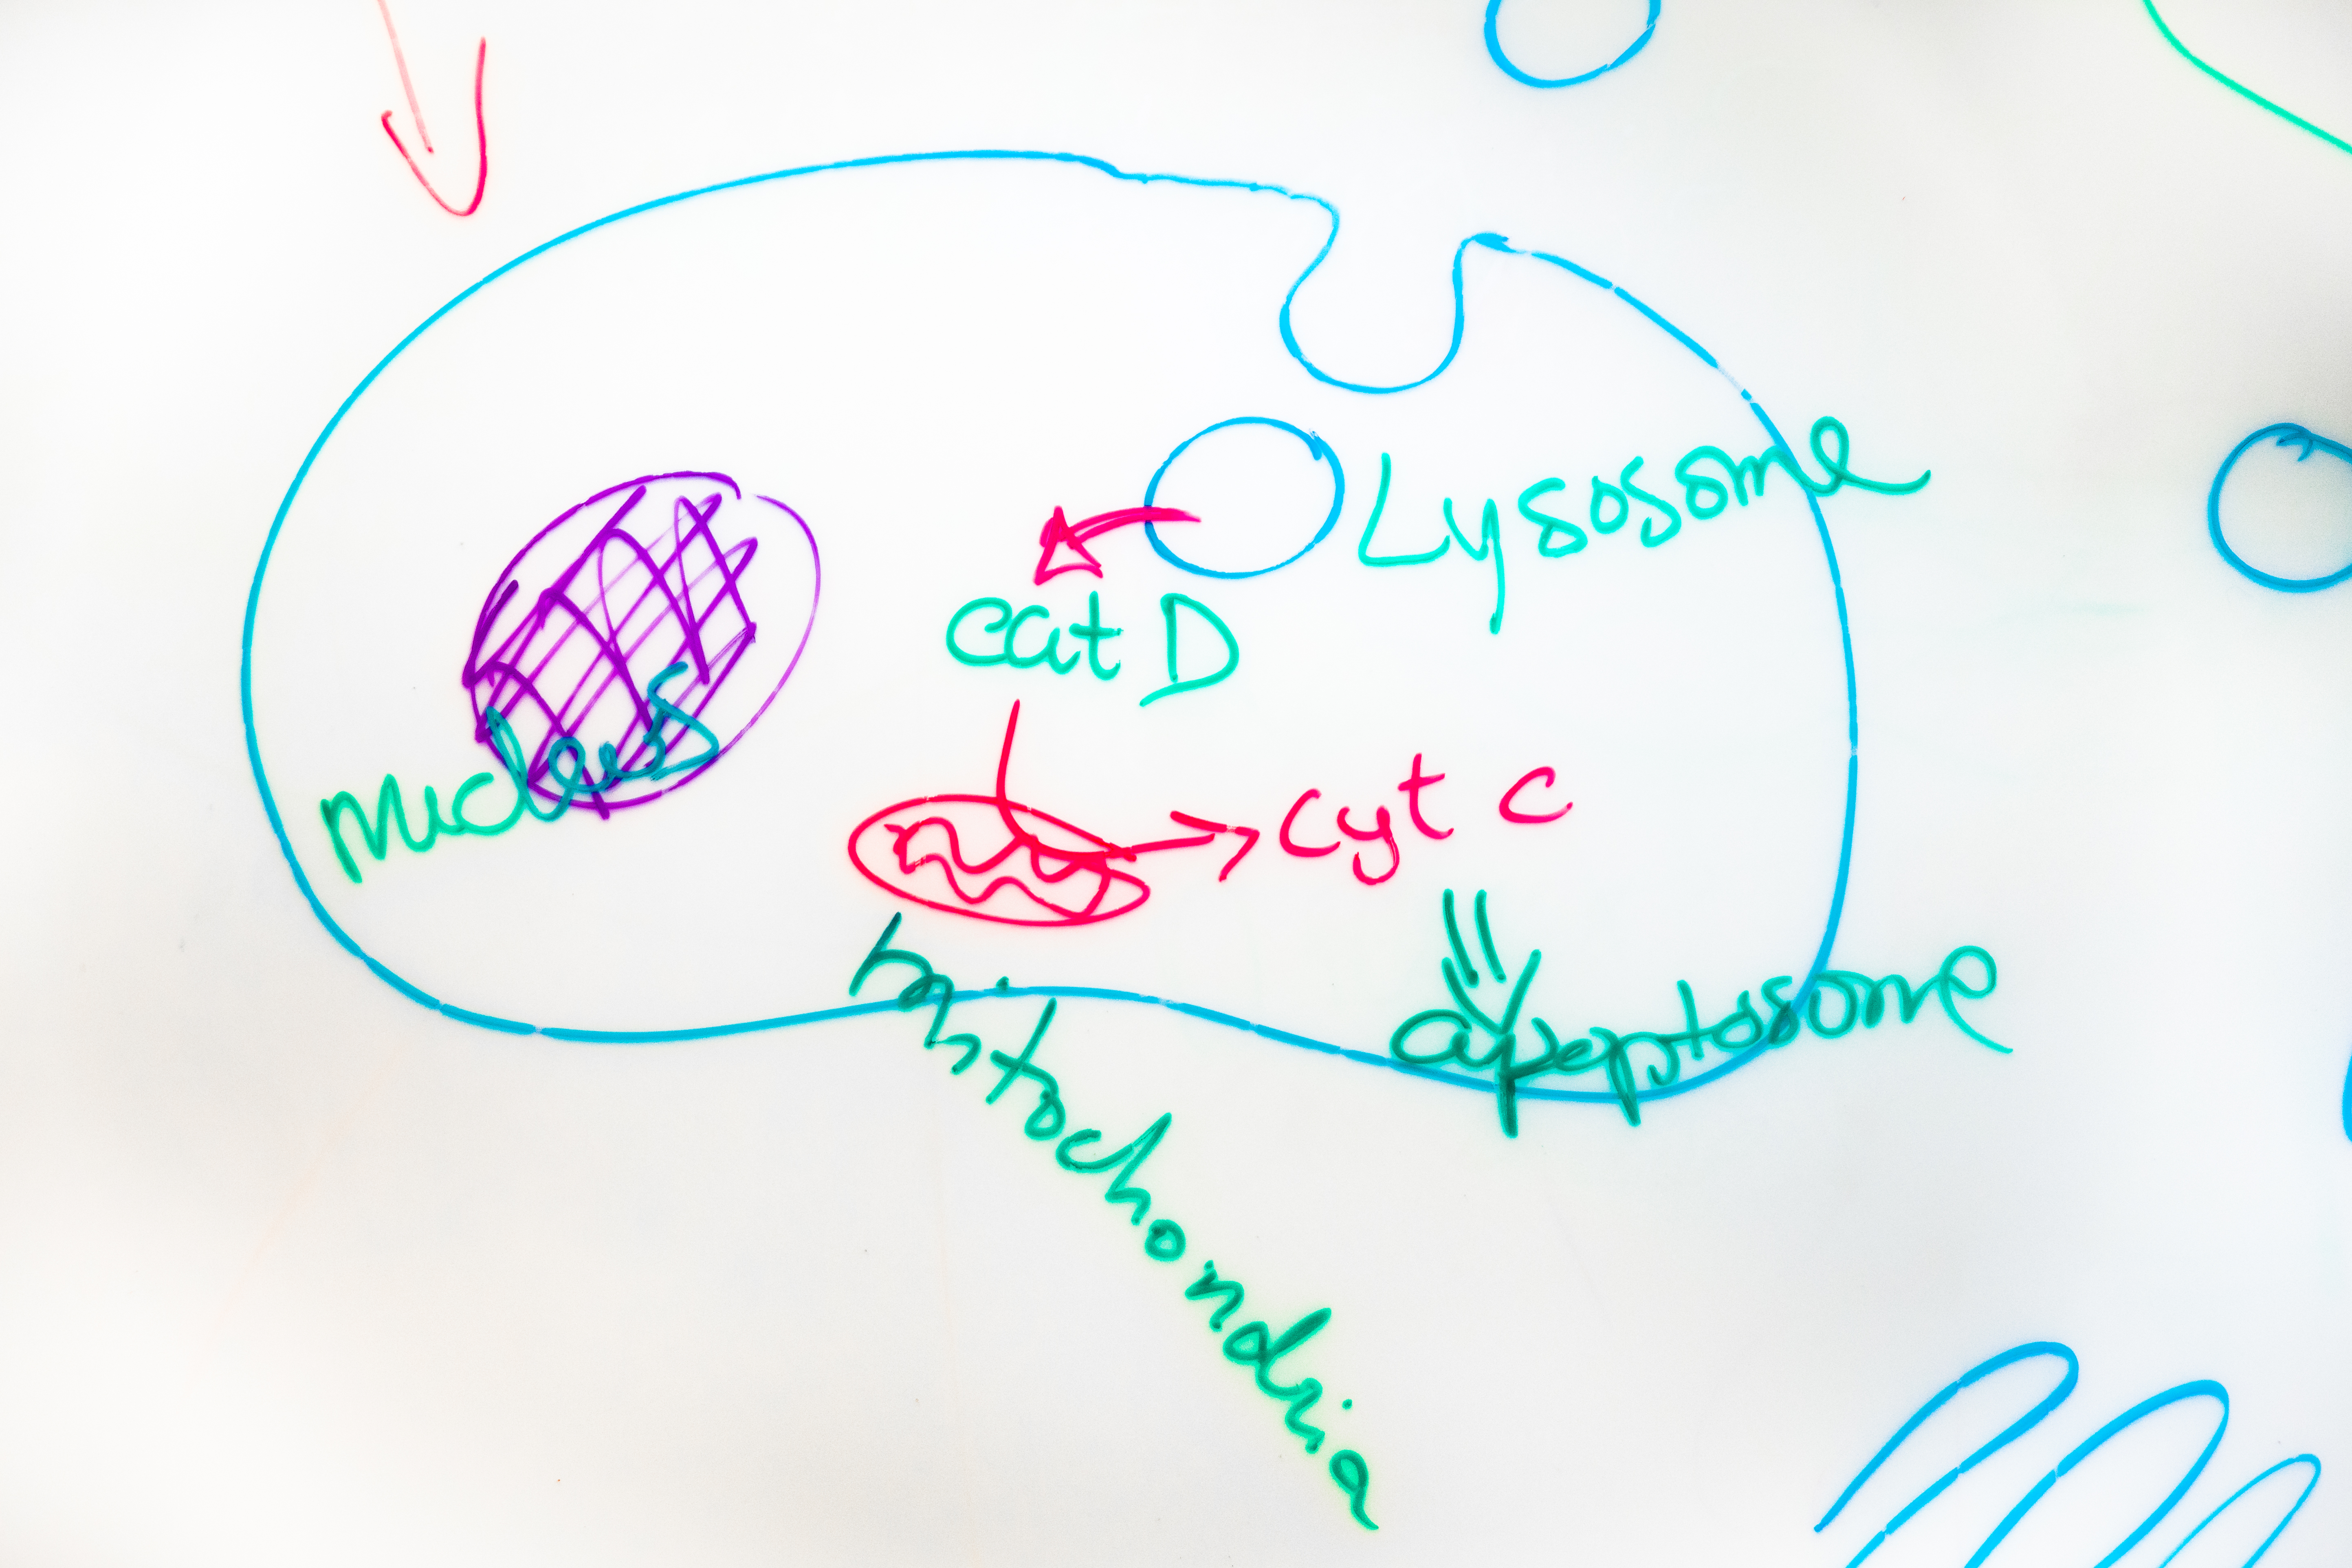 Lysosomen, skiss på whiteboard